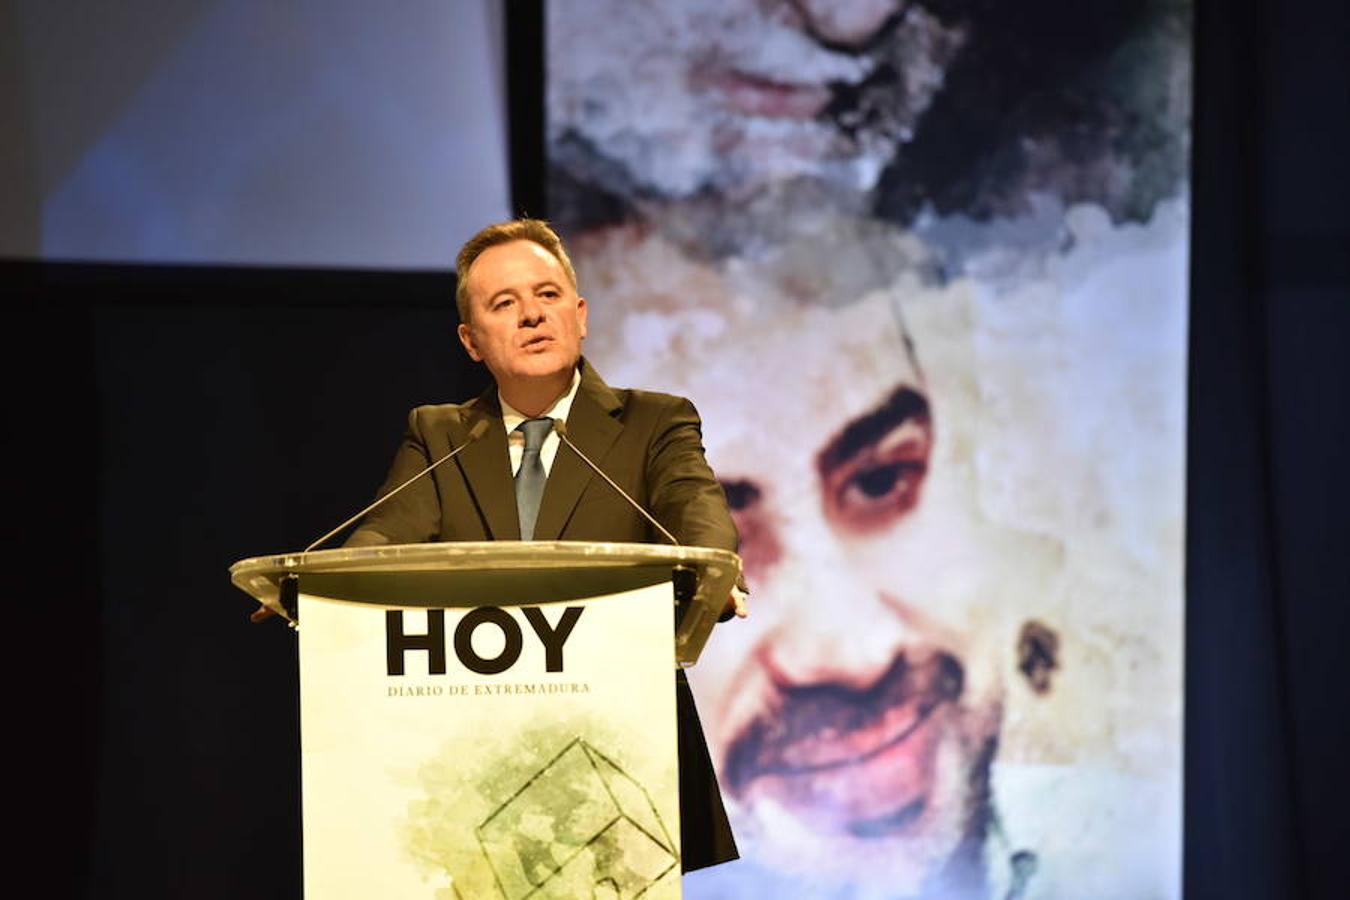 Ángel Ortiz, director del diario HOY, durante su intervención.